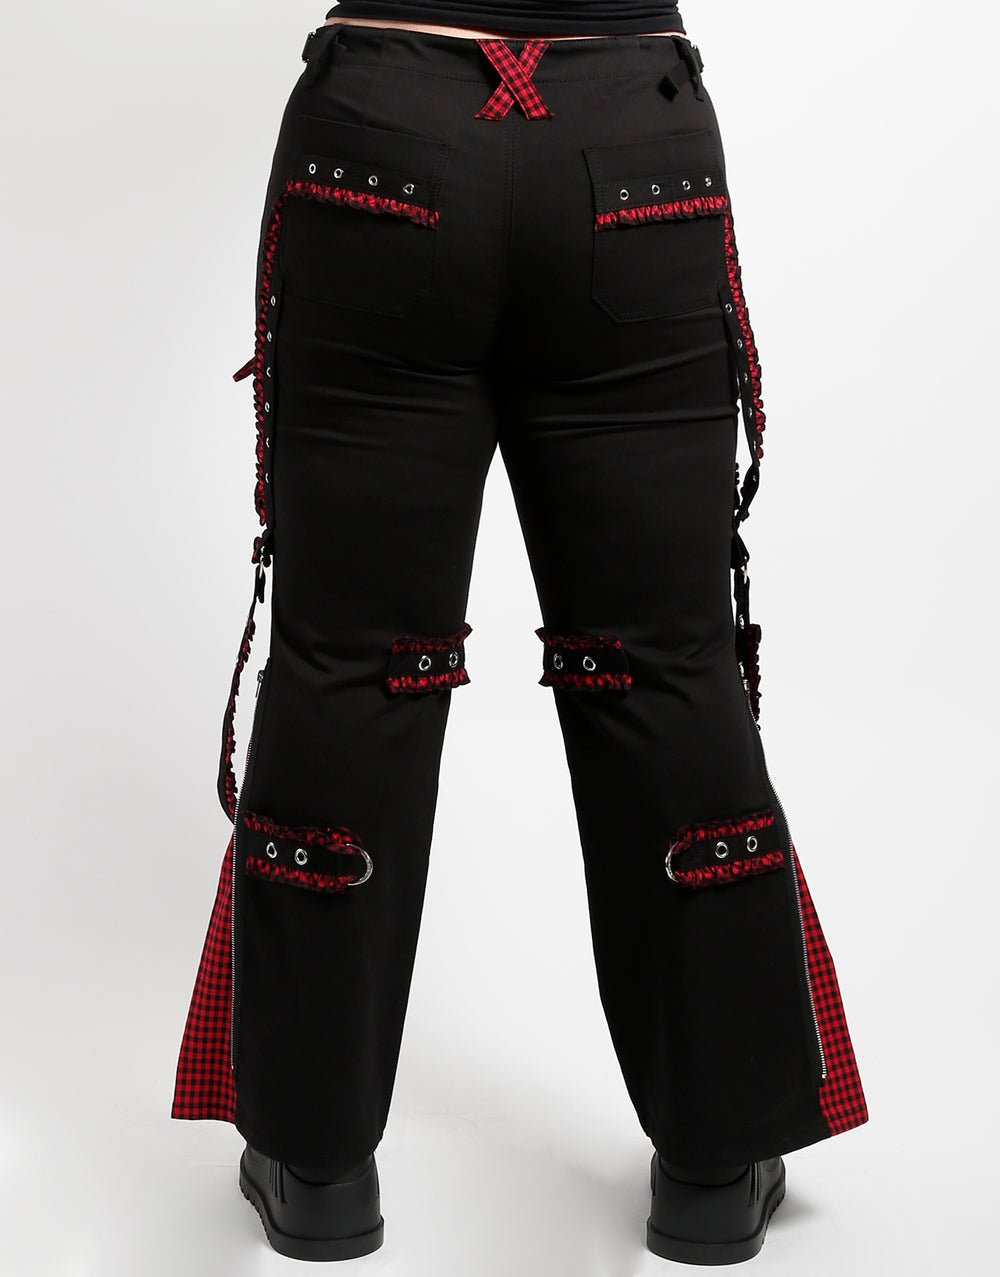 Bo Peep Dark Street Pant Red 29 / Black/Red